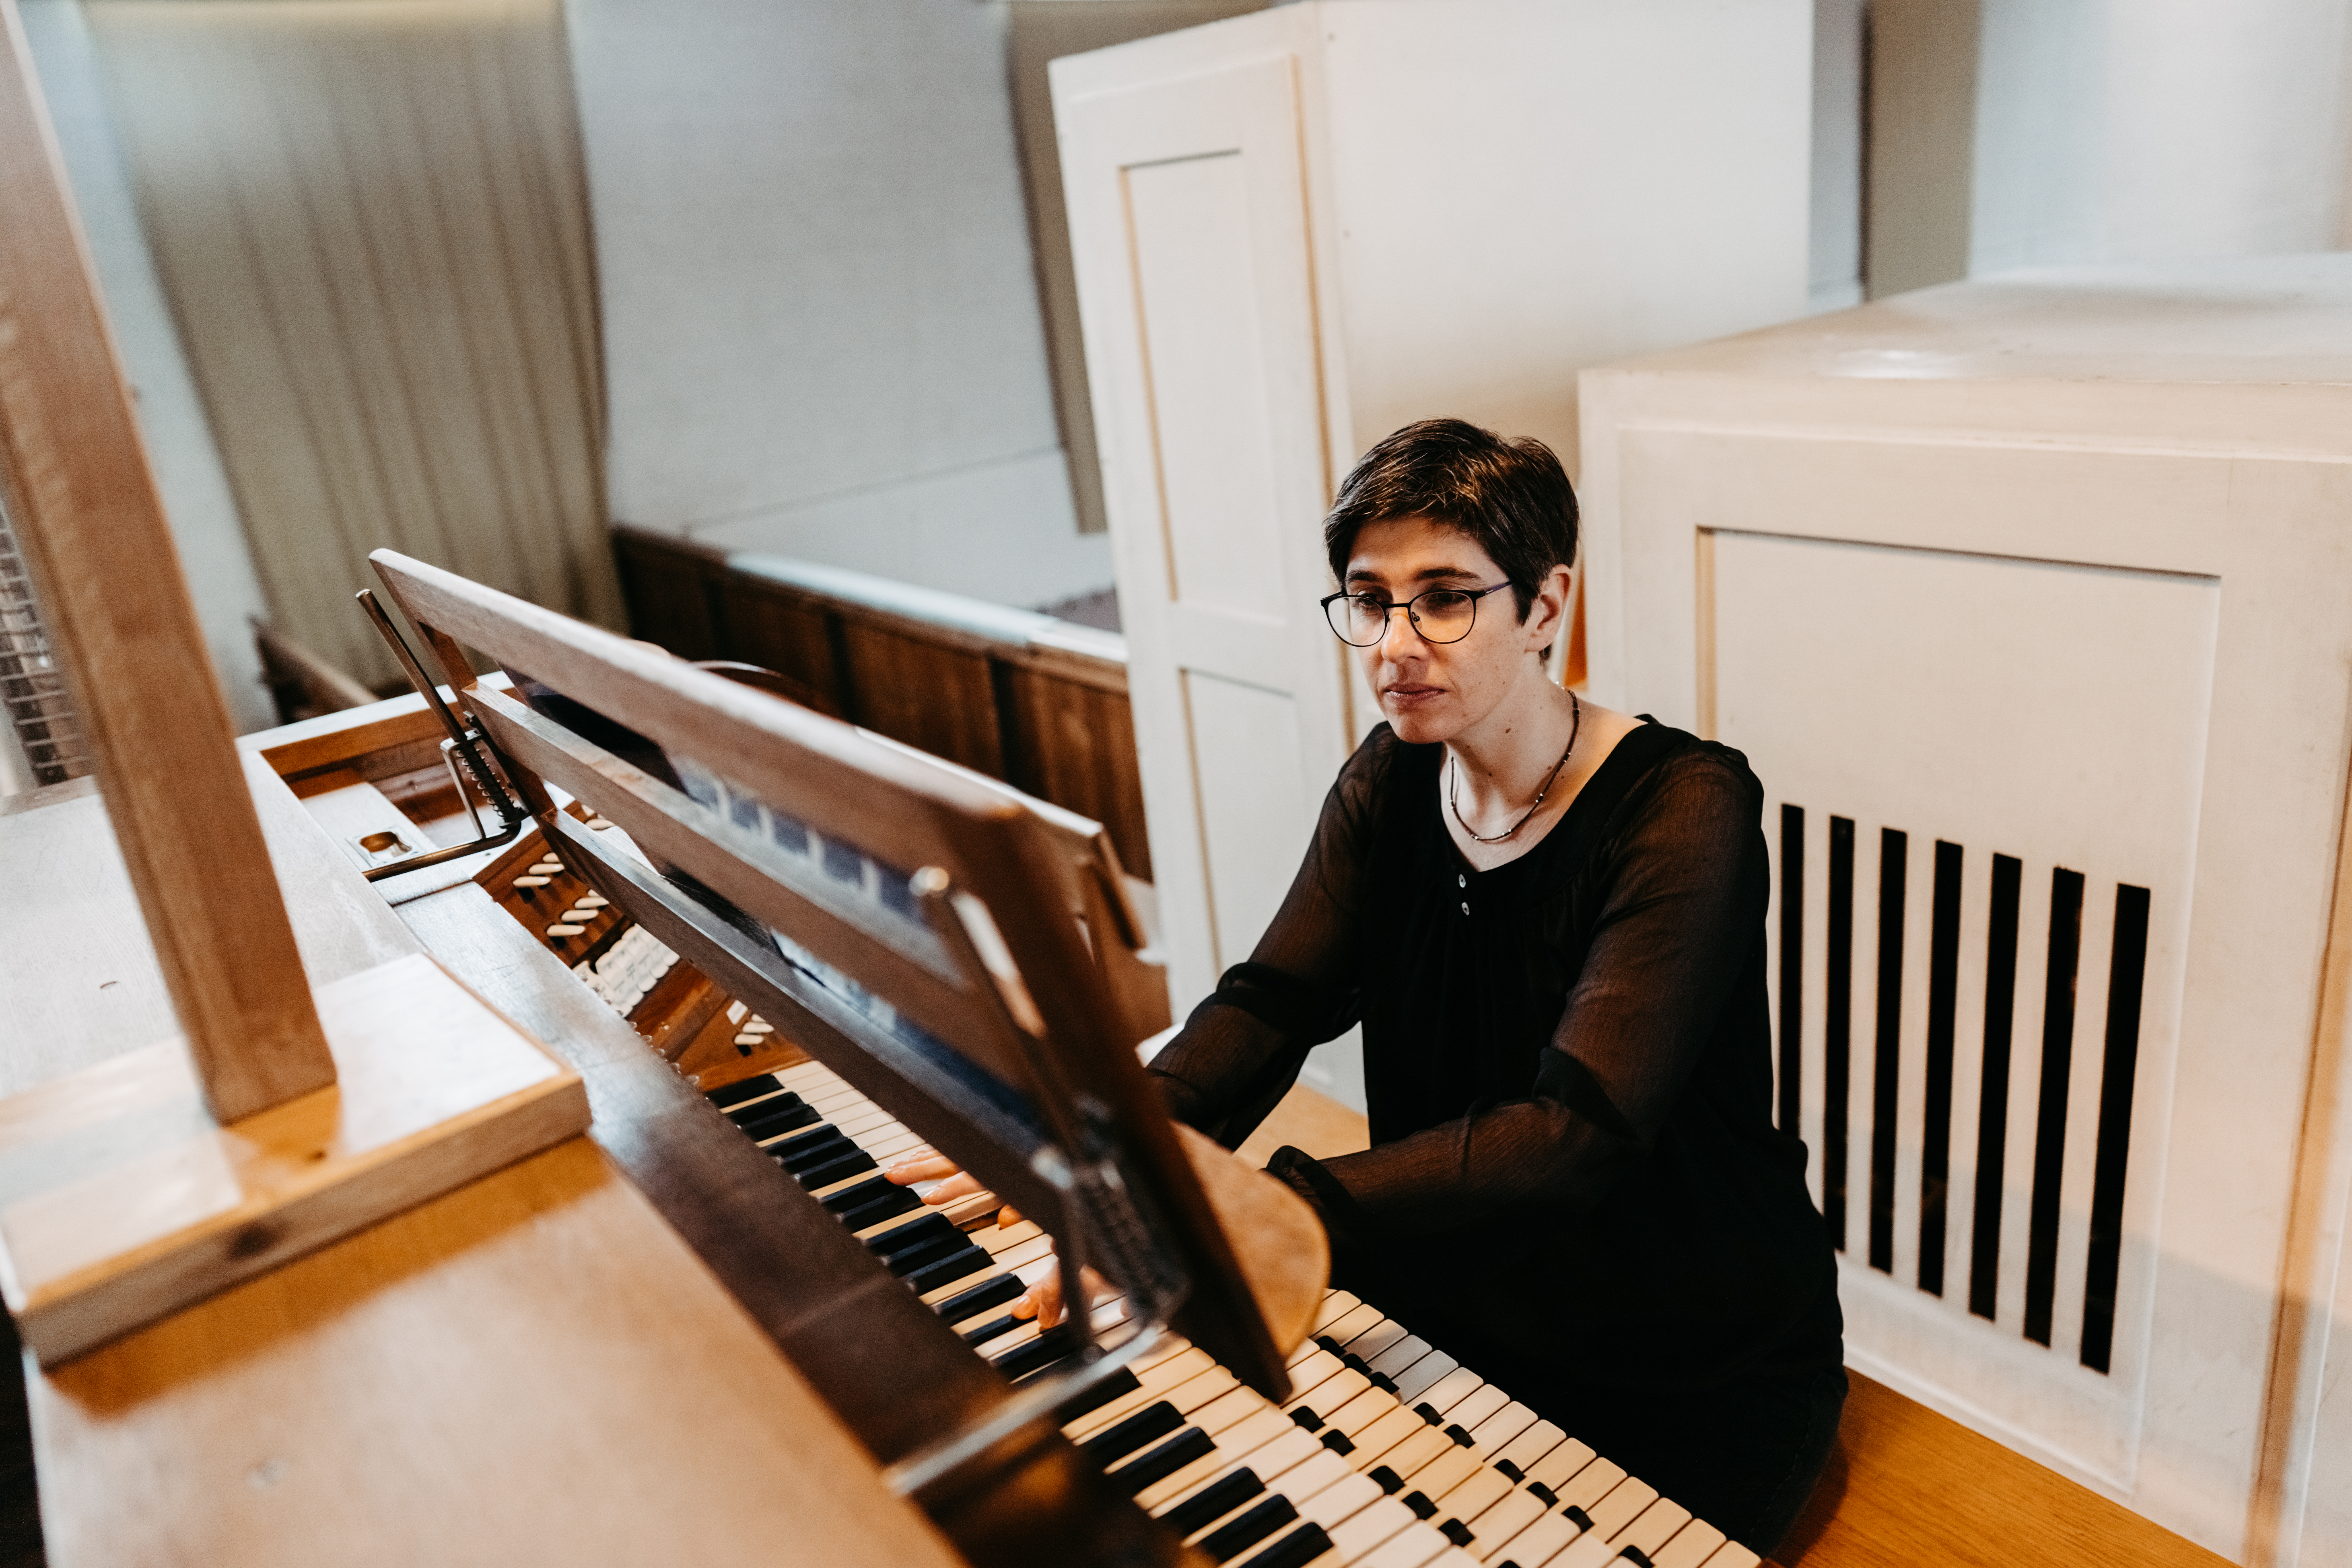 Kantorin Magdalena Meidert beim Orgelspiel